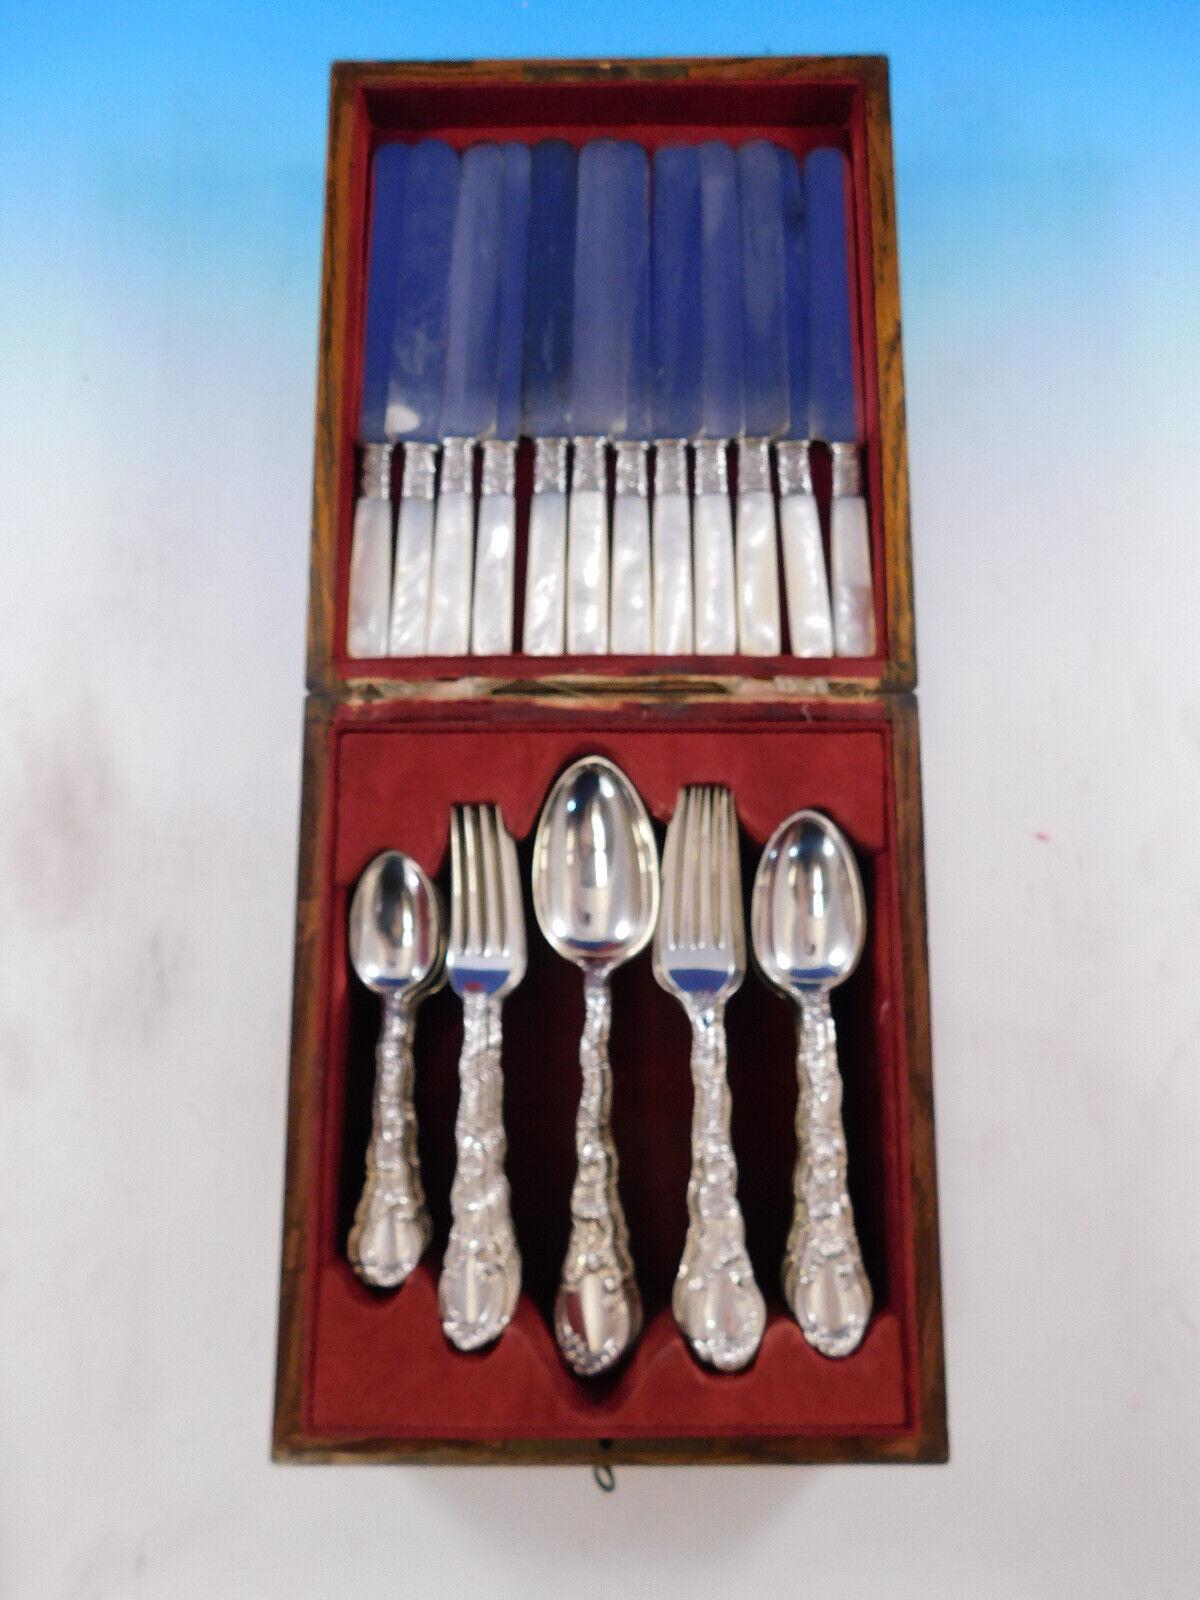 Seltenes Besteck Louis XV von Durgin, um 1891, aus Sterlingsilber - 54 Teile (plus 12 Messer mit Perlmuttgriff). Dieses Set enthält:

12 Messer mit Perlmuttgriff, 8